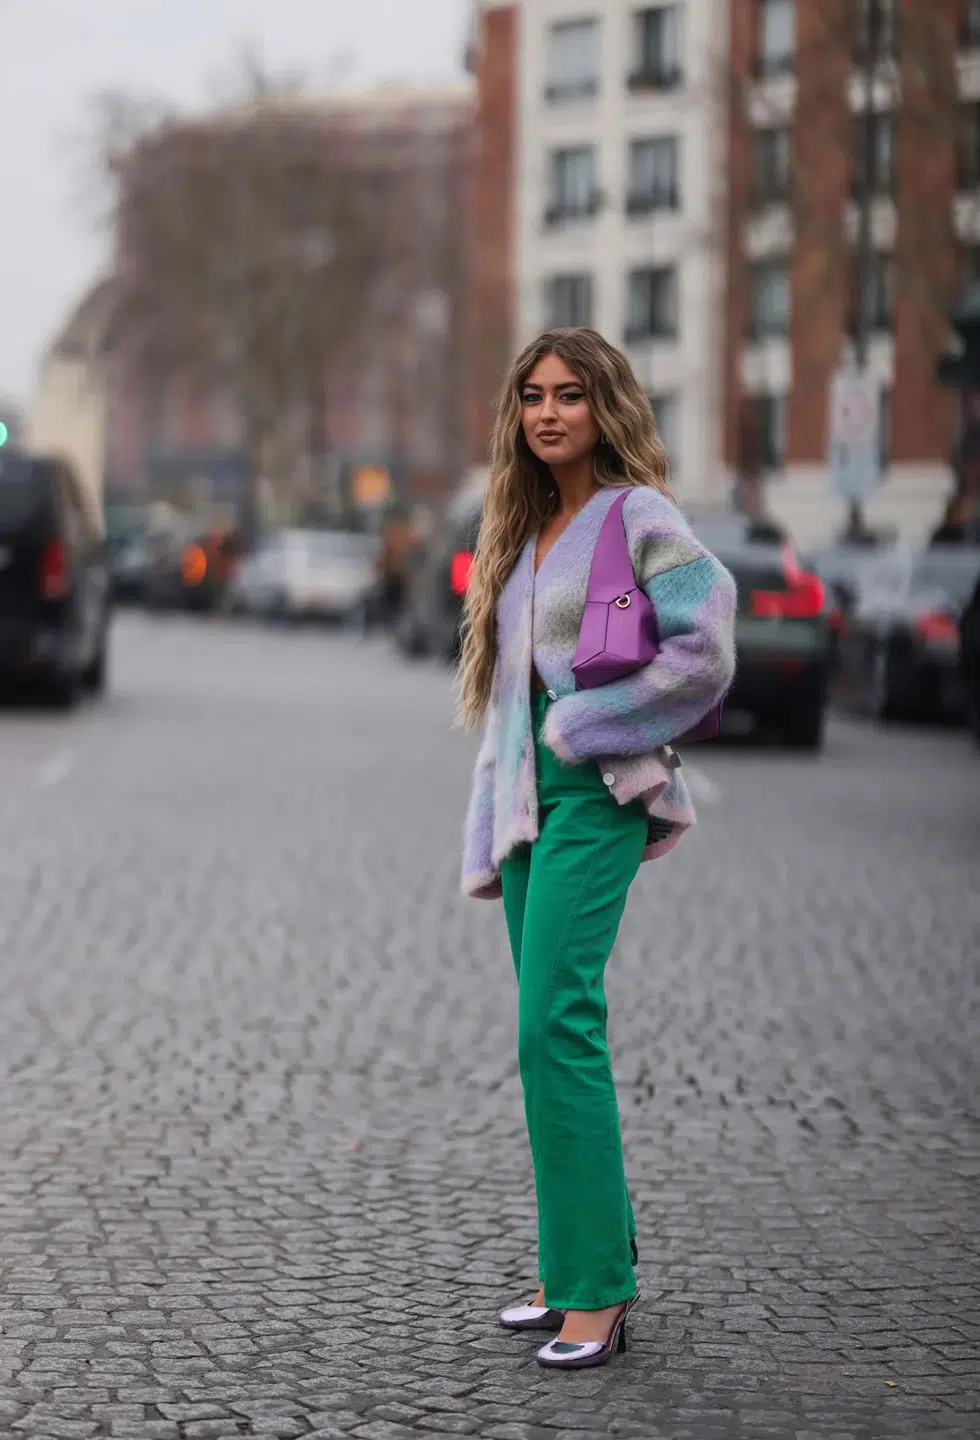 Девушка в зеленых джинсах, кардигане пастельного цвета и серебристых туфлях на каблуке